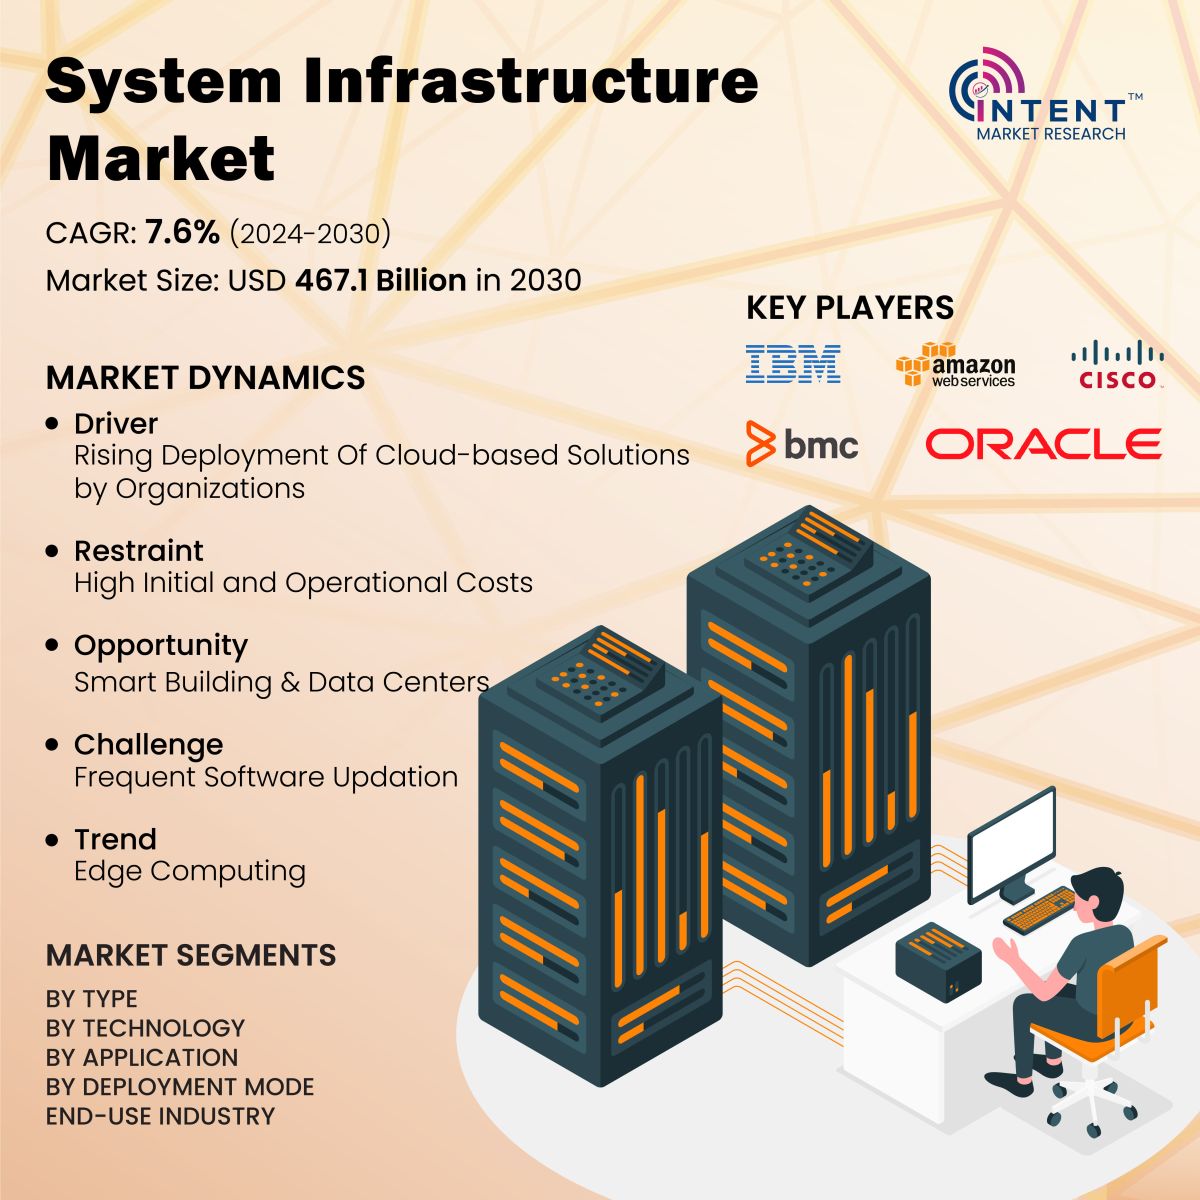 System Infrastructure Market Infoghraphics